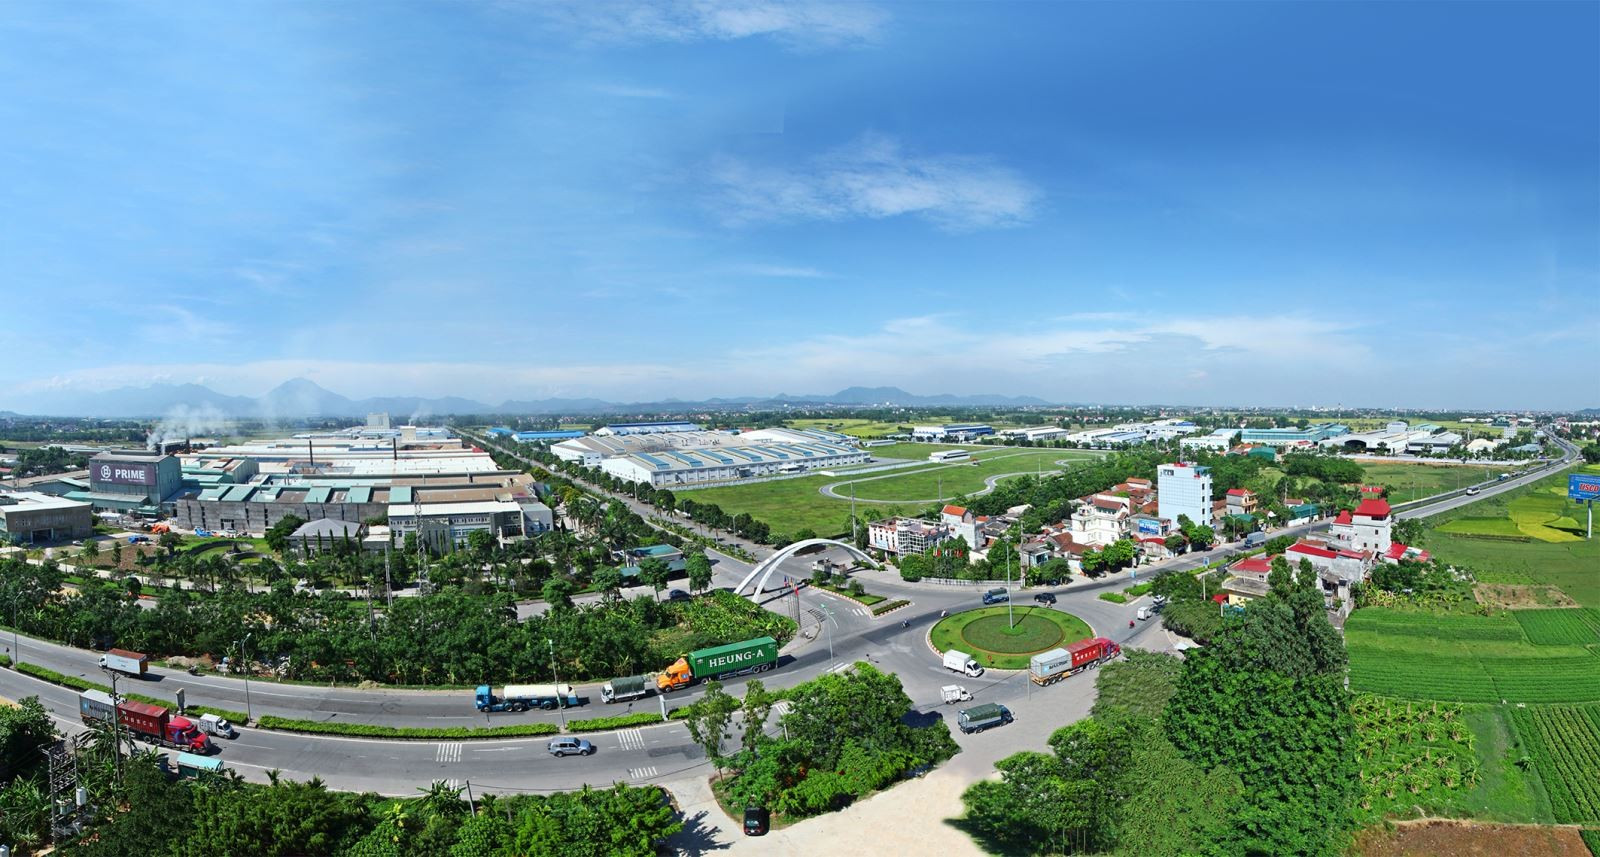 Huyện Bình Xuyên, tỉnh Vĩnh Phúc từng bước chinh phục những 'nấc thang mới', phấn đấu đến năm 2025 đạt tiêu chí trở thành thị xã